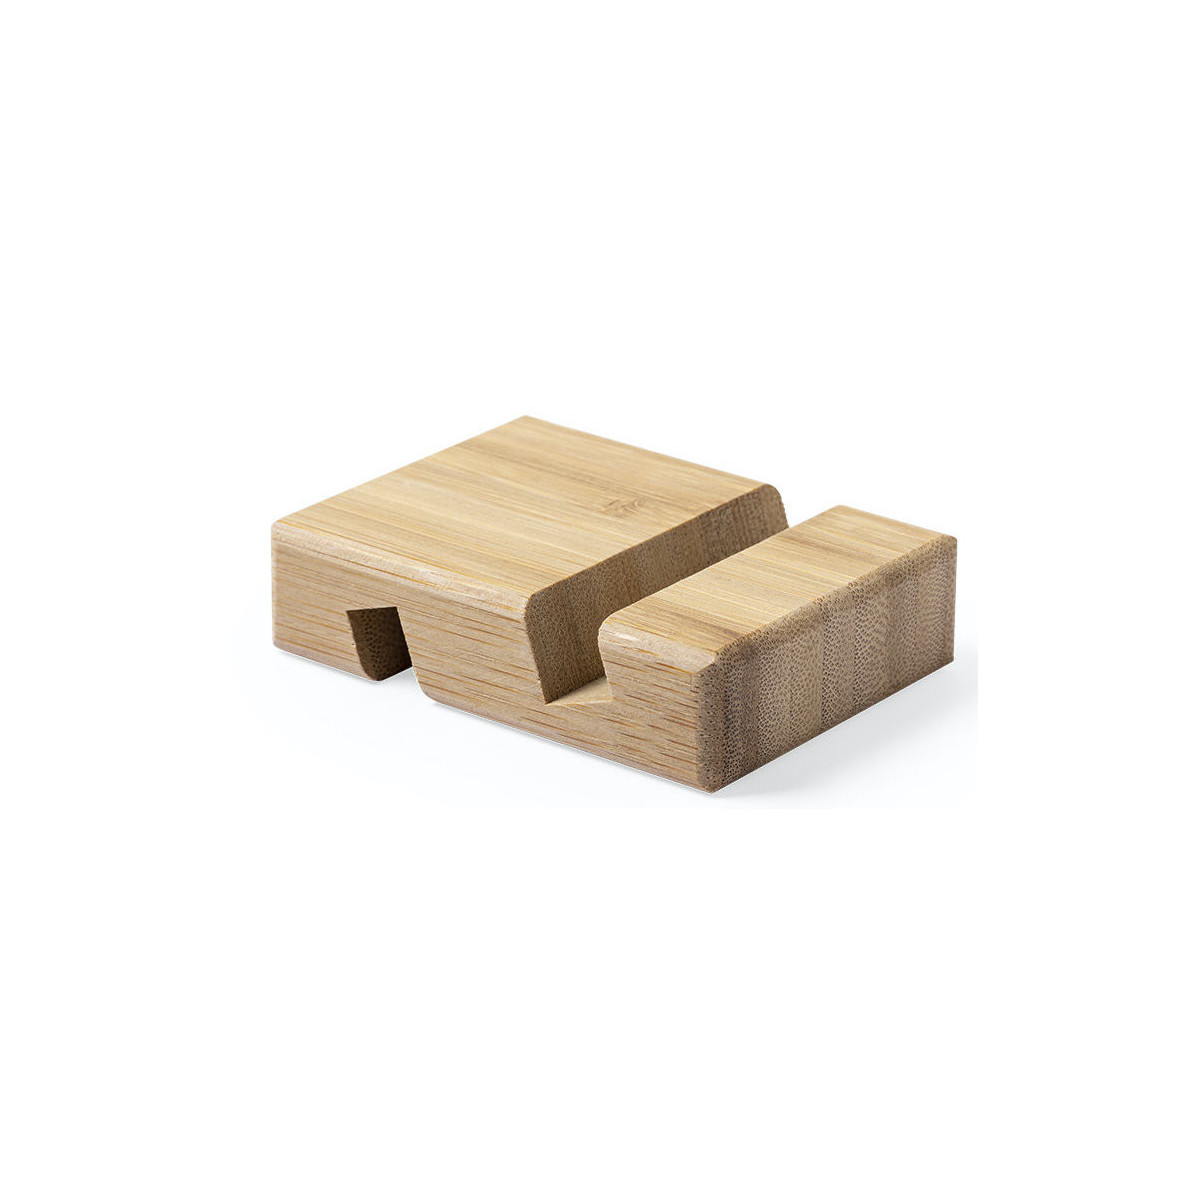 Soporte de madera bambú para dispositivos